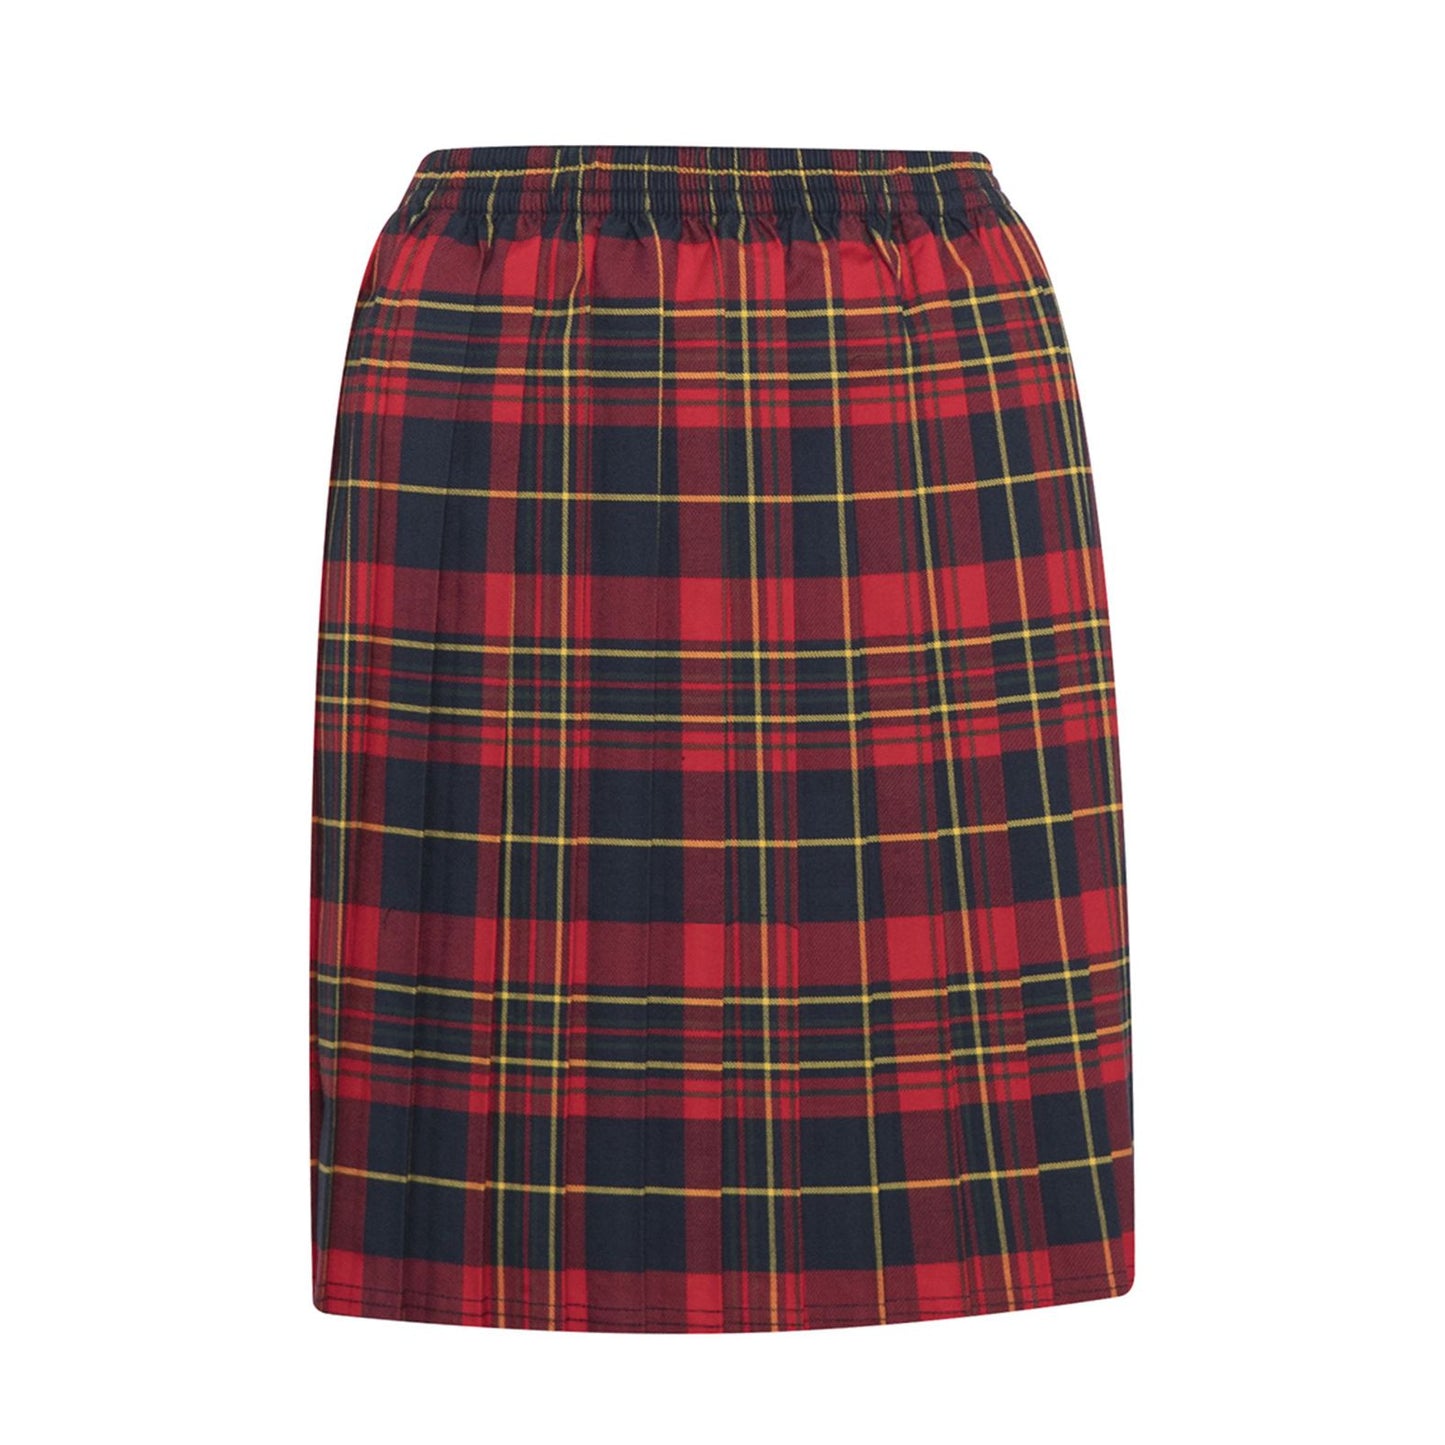 Peckover Uniform Skirt